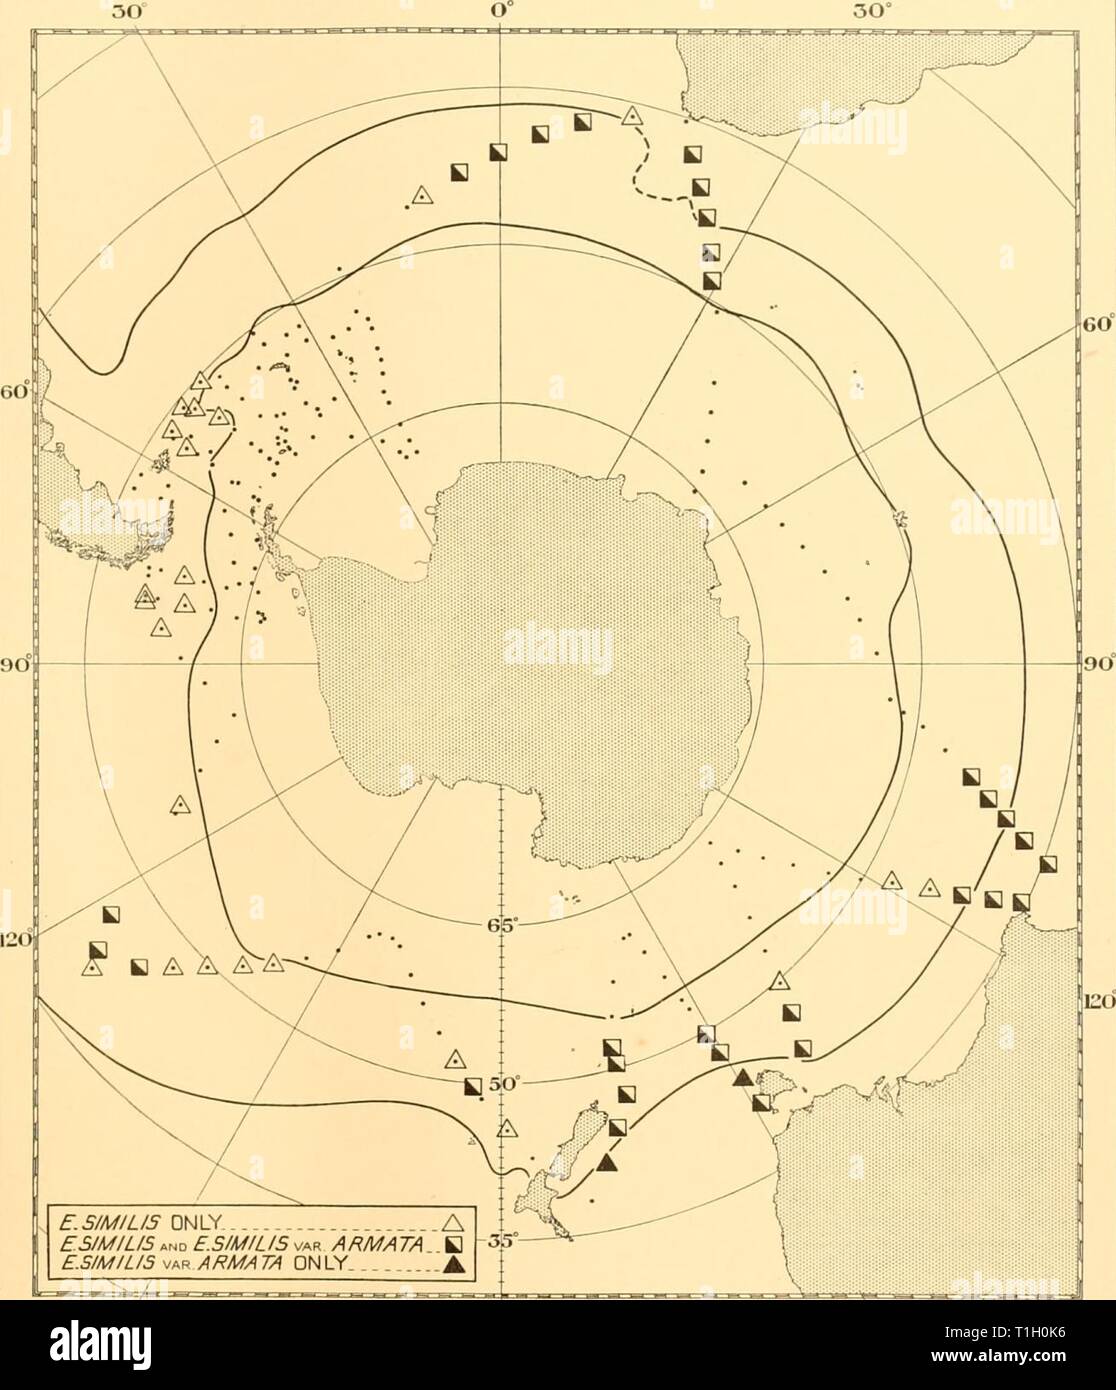 Scoperta dei report (1937) Rapporti ricerche discoveryreports14inst Anno: 1937 EUPHAUSIA SIM LIS 235 E.S/M/L/S Dhiiy UN ESIMILIS E E.SIMILIS var ARMATA B E.S/M/L/S - jR armata solo  150 West 180°est 150° Fig. 26. Diagramma che mostra il verificarsi di E. similis e E. similis var. armata presso le stazioni delle indagini del settore Falkland nelle estati 1931-2 e 1932-3, e delle crociere circumpolare febbraio a ottobre 1932. L'interno dei due linee spesse rappresenta la convergenza antartica, esterno la sub- convergenza antartica. 6-2 Foto Stock